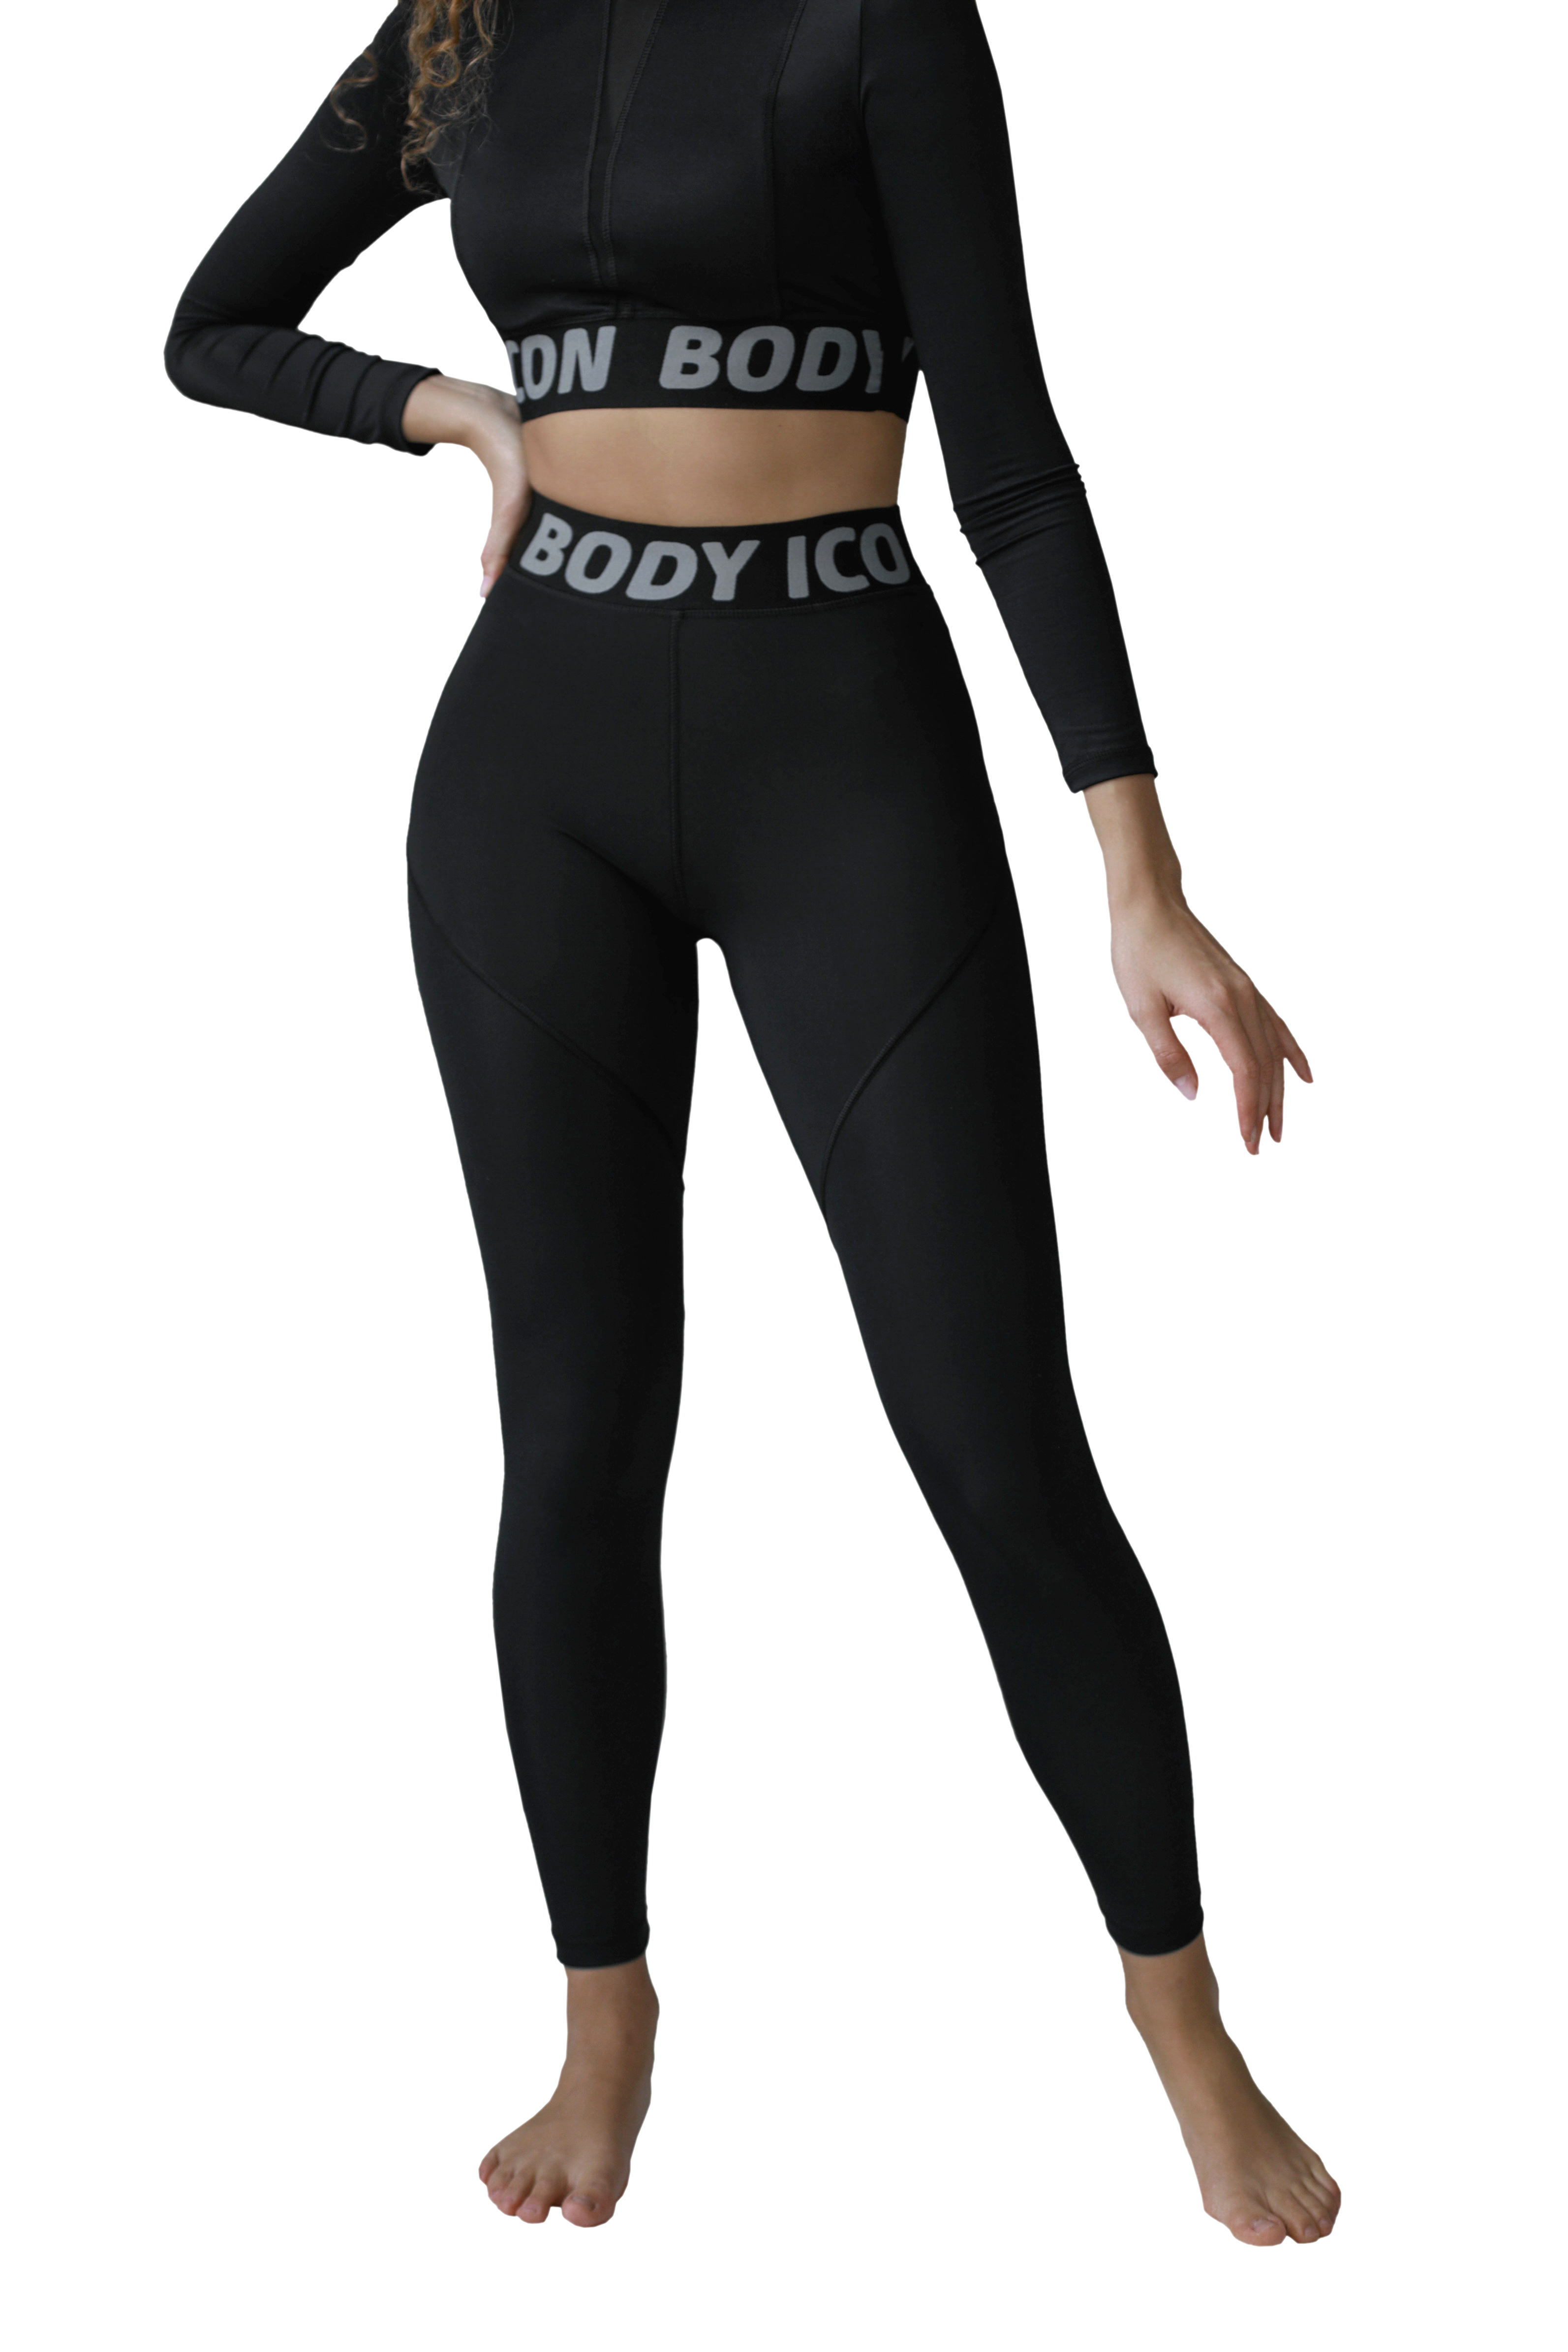 Спортивные леггинсы женские BODY ICON LS-1005 черные XL